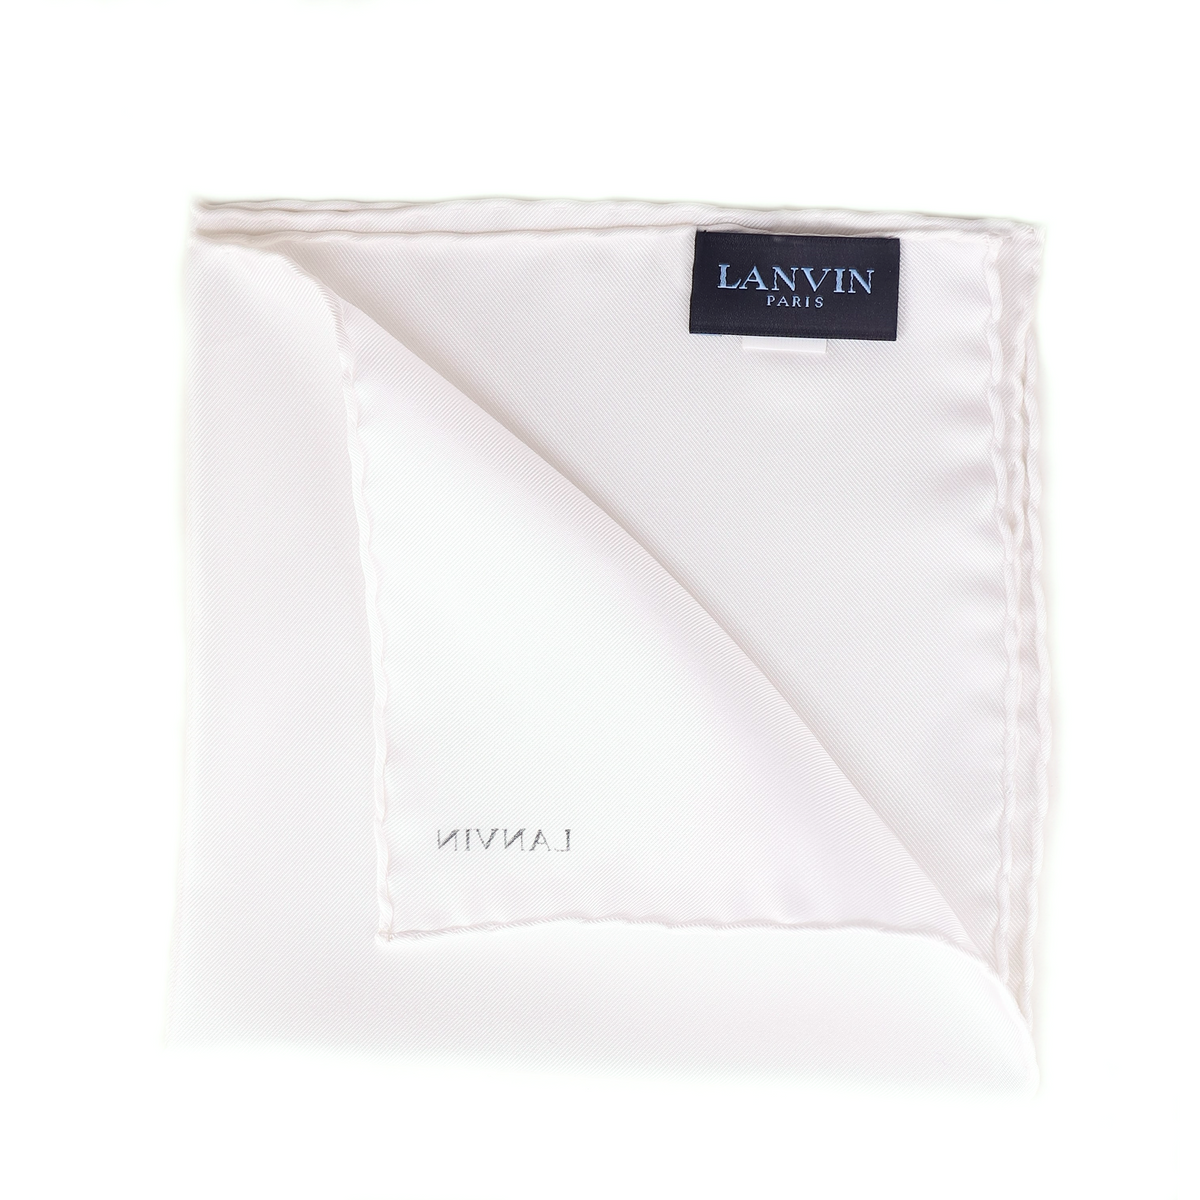 Lanvin Pocket square-hanky-Cufflinks.com.sg | Neckties.com.sg-Cufflinks.com.sg